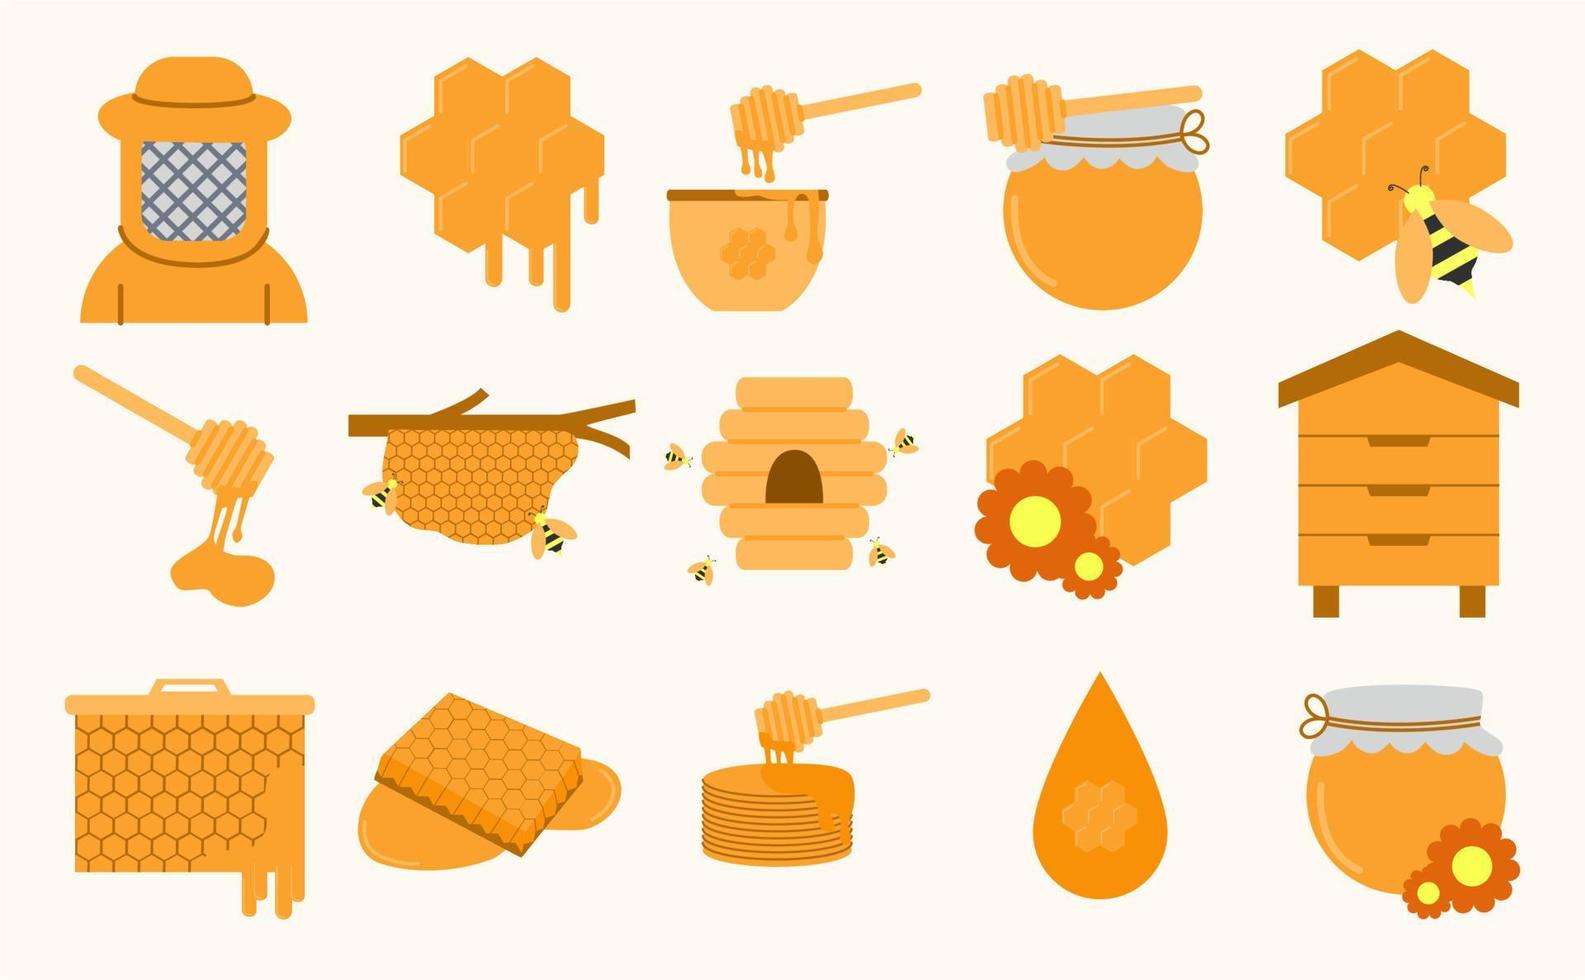 conjunto de iconos de miel y abeja. colección de íconos planos como miel, abeja, colmena, panal, cera de abeja, apicultor, nido de abeja, cuchara de miel y otros vector